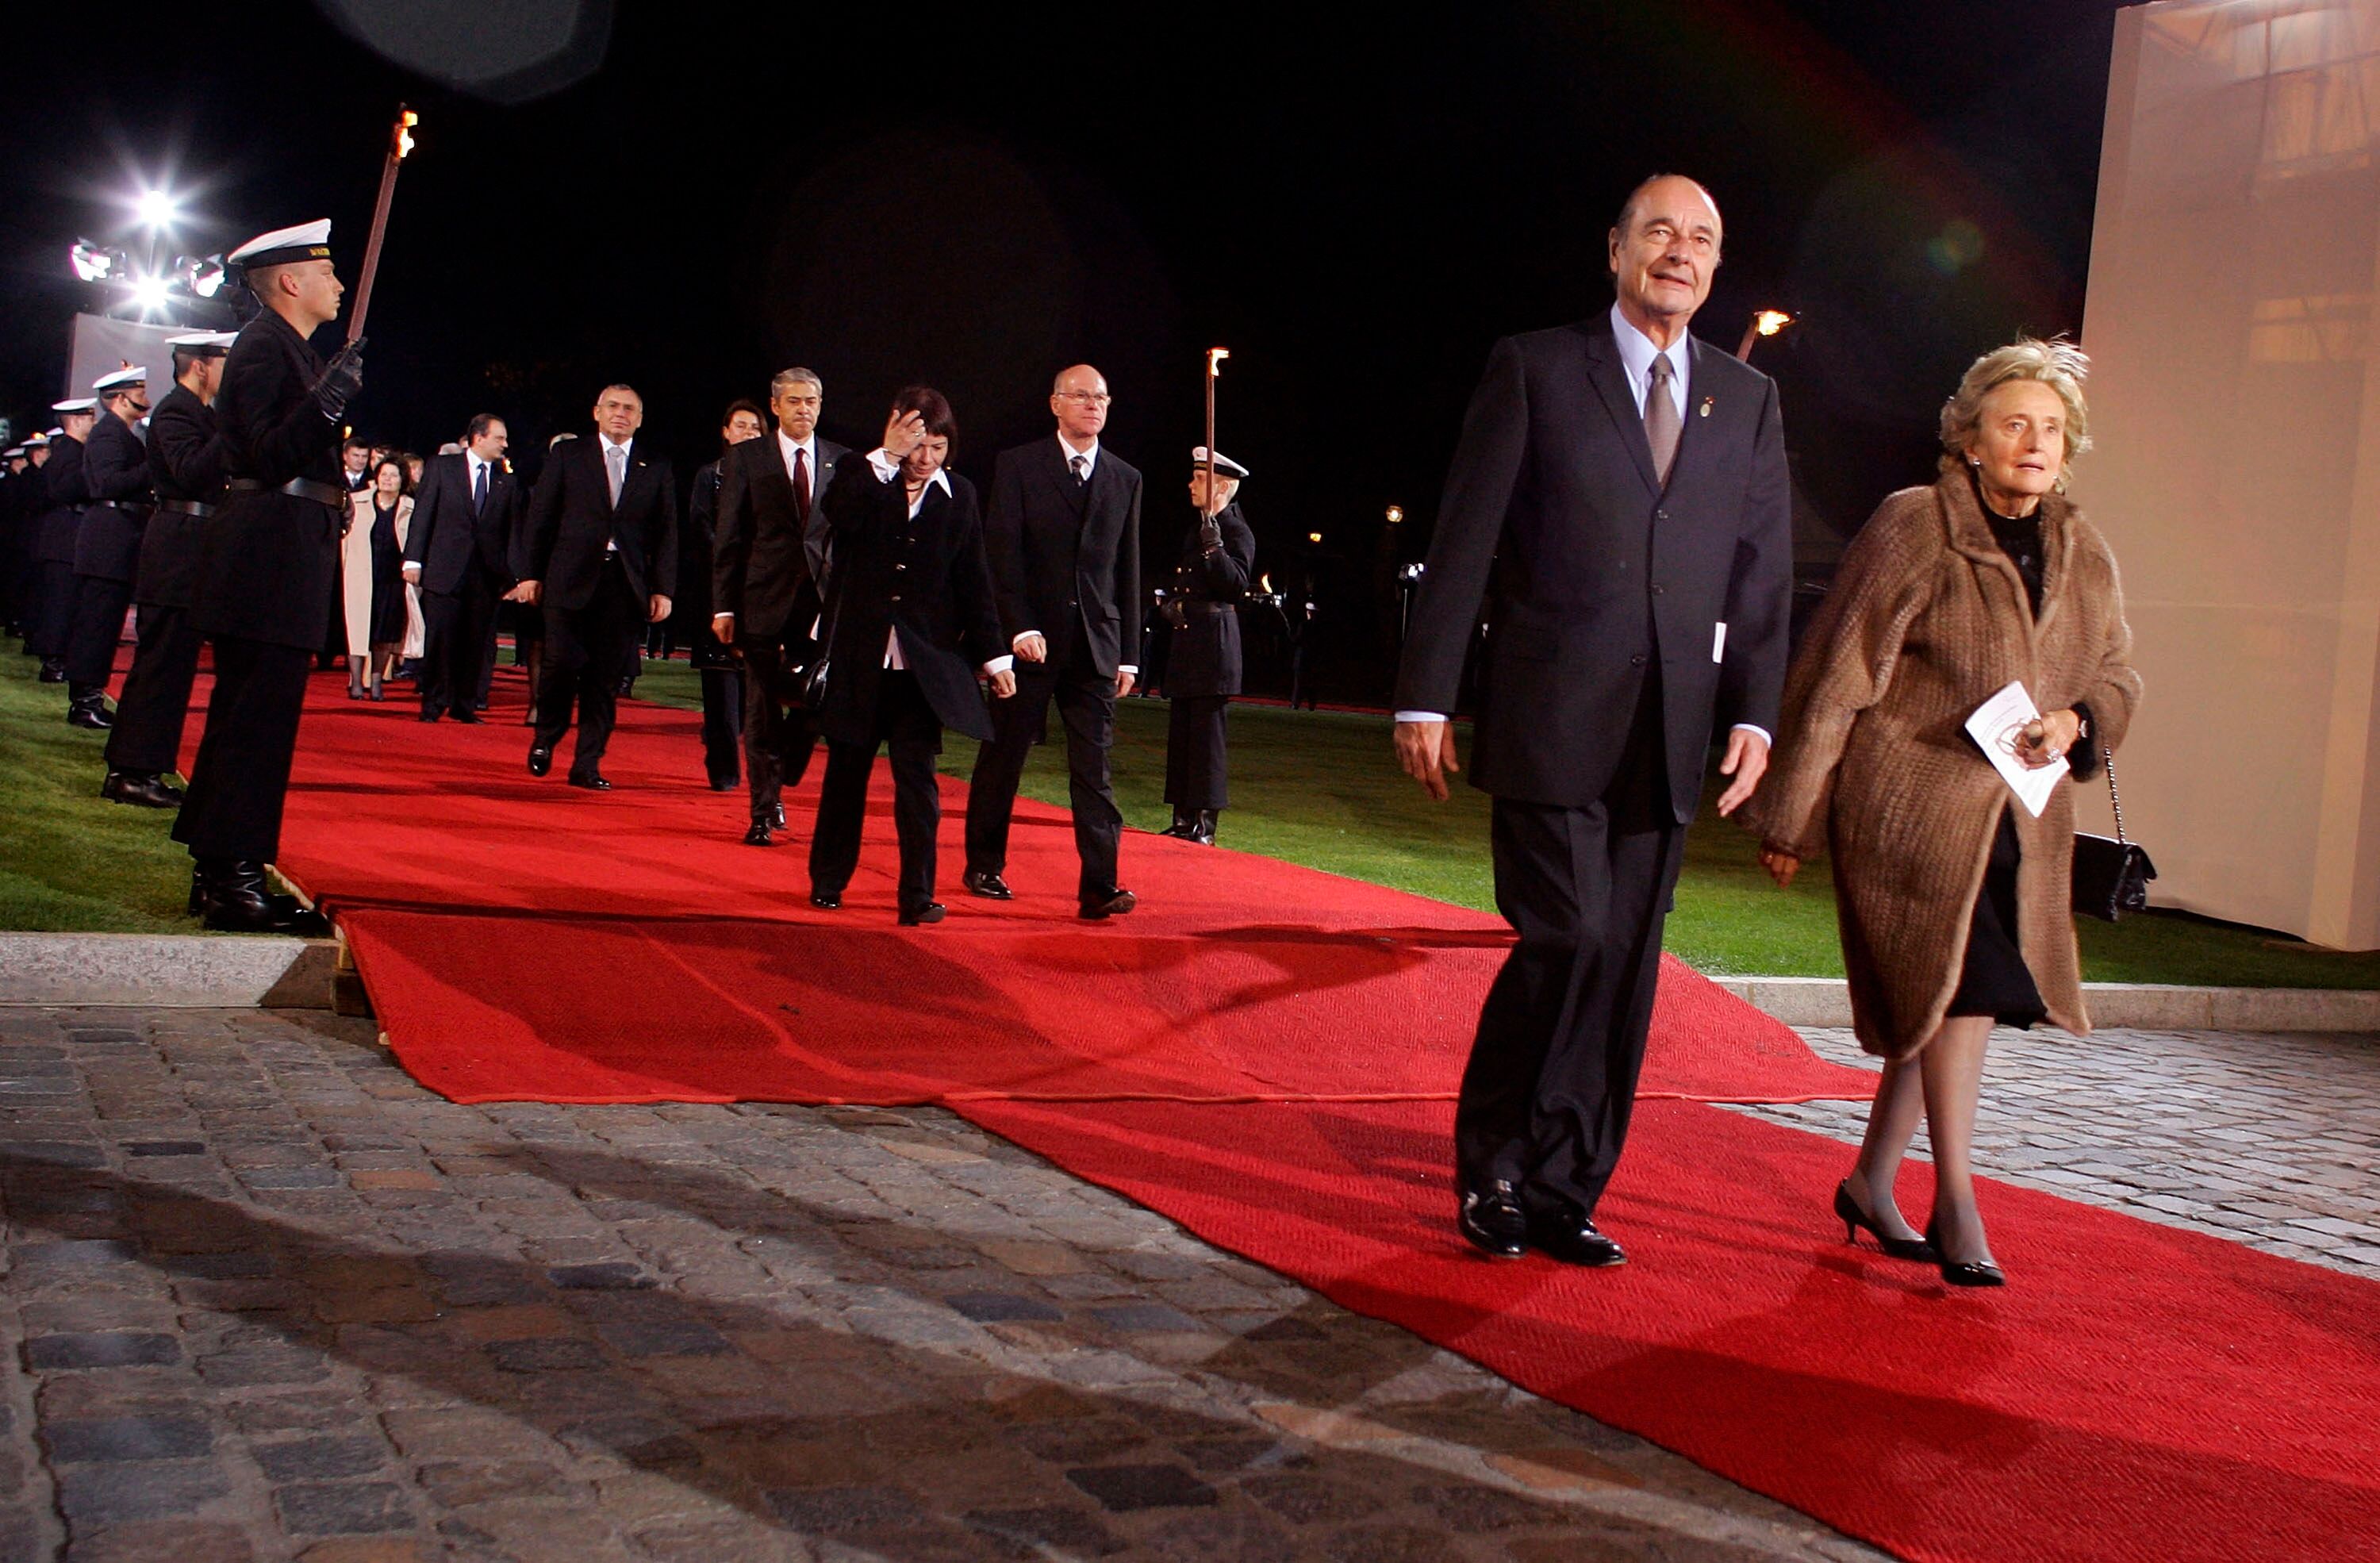 Jacques Chirac et son épouse Bernadette arrivent à un dîner en l'honneur des dirigeants européens au Bellevue Palace le 24 mars 2007 à Berlin. | Photo : GettyImage